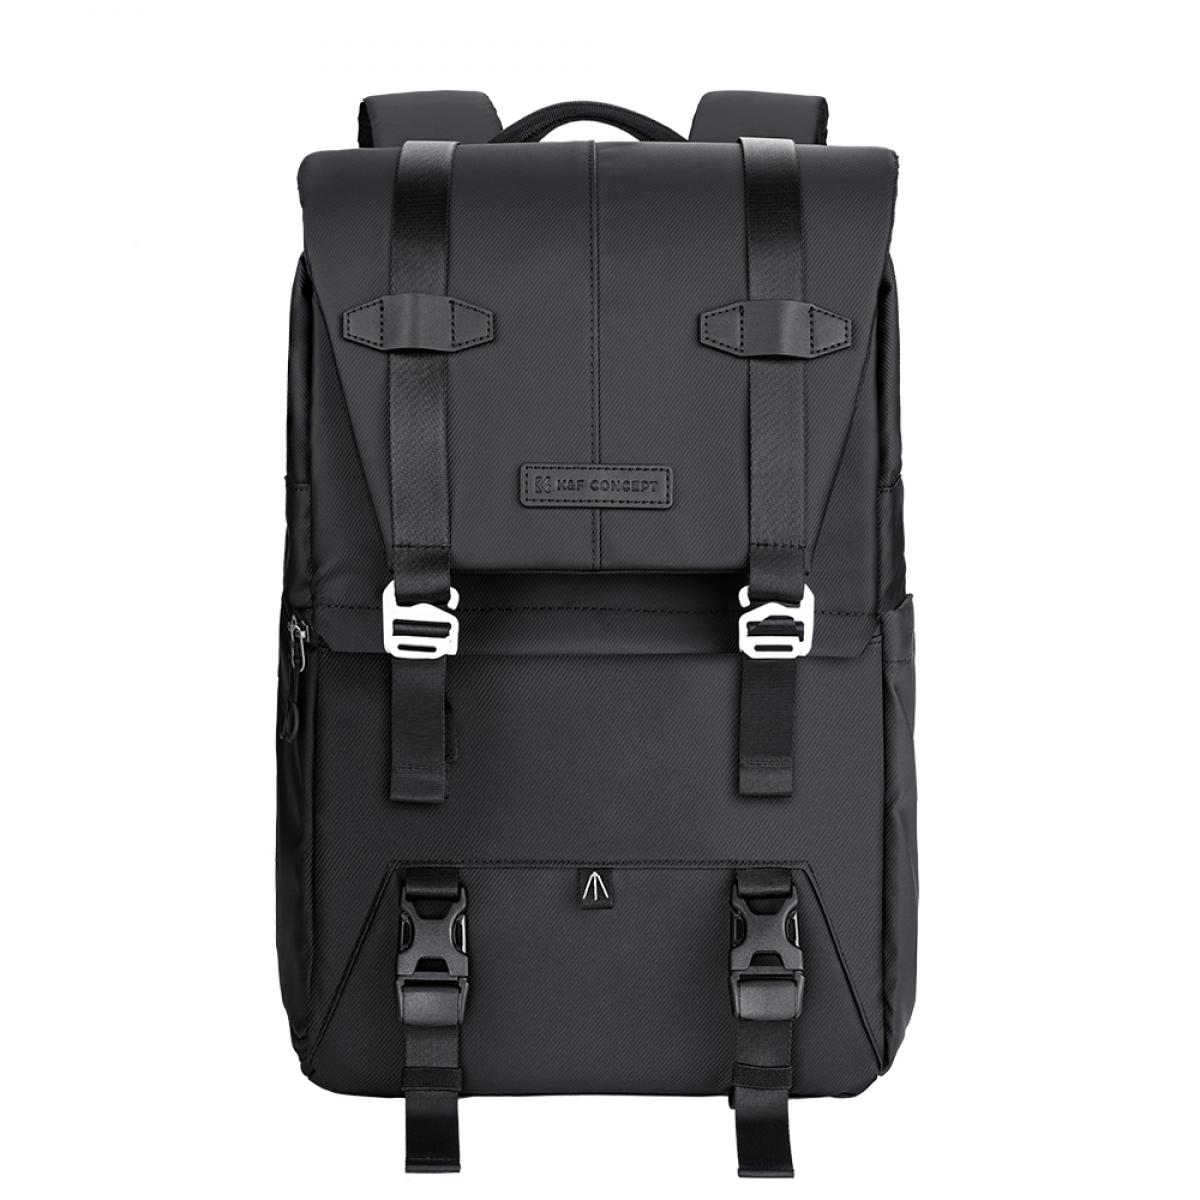 K&F Concept Beta Backpack 20 literes, fots htizsk, fekete sz